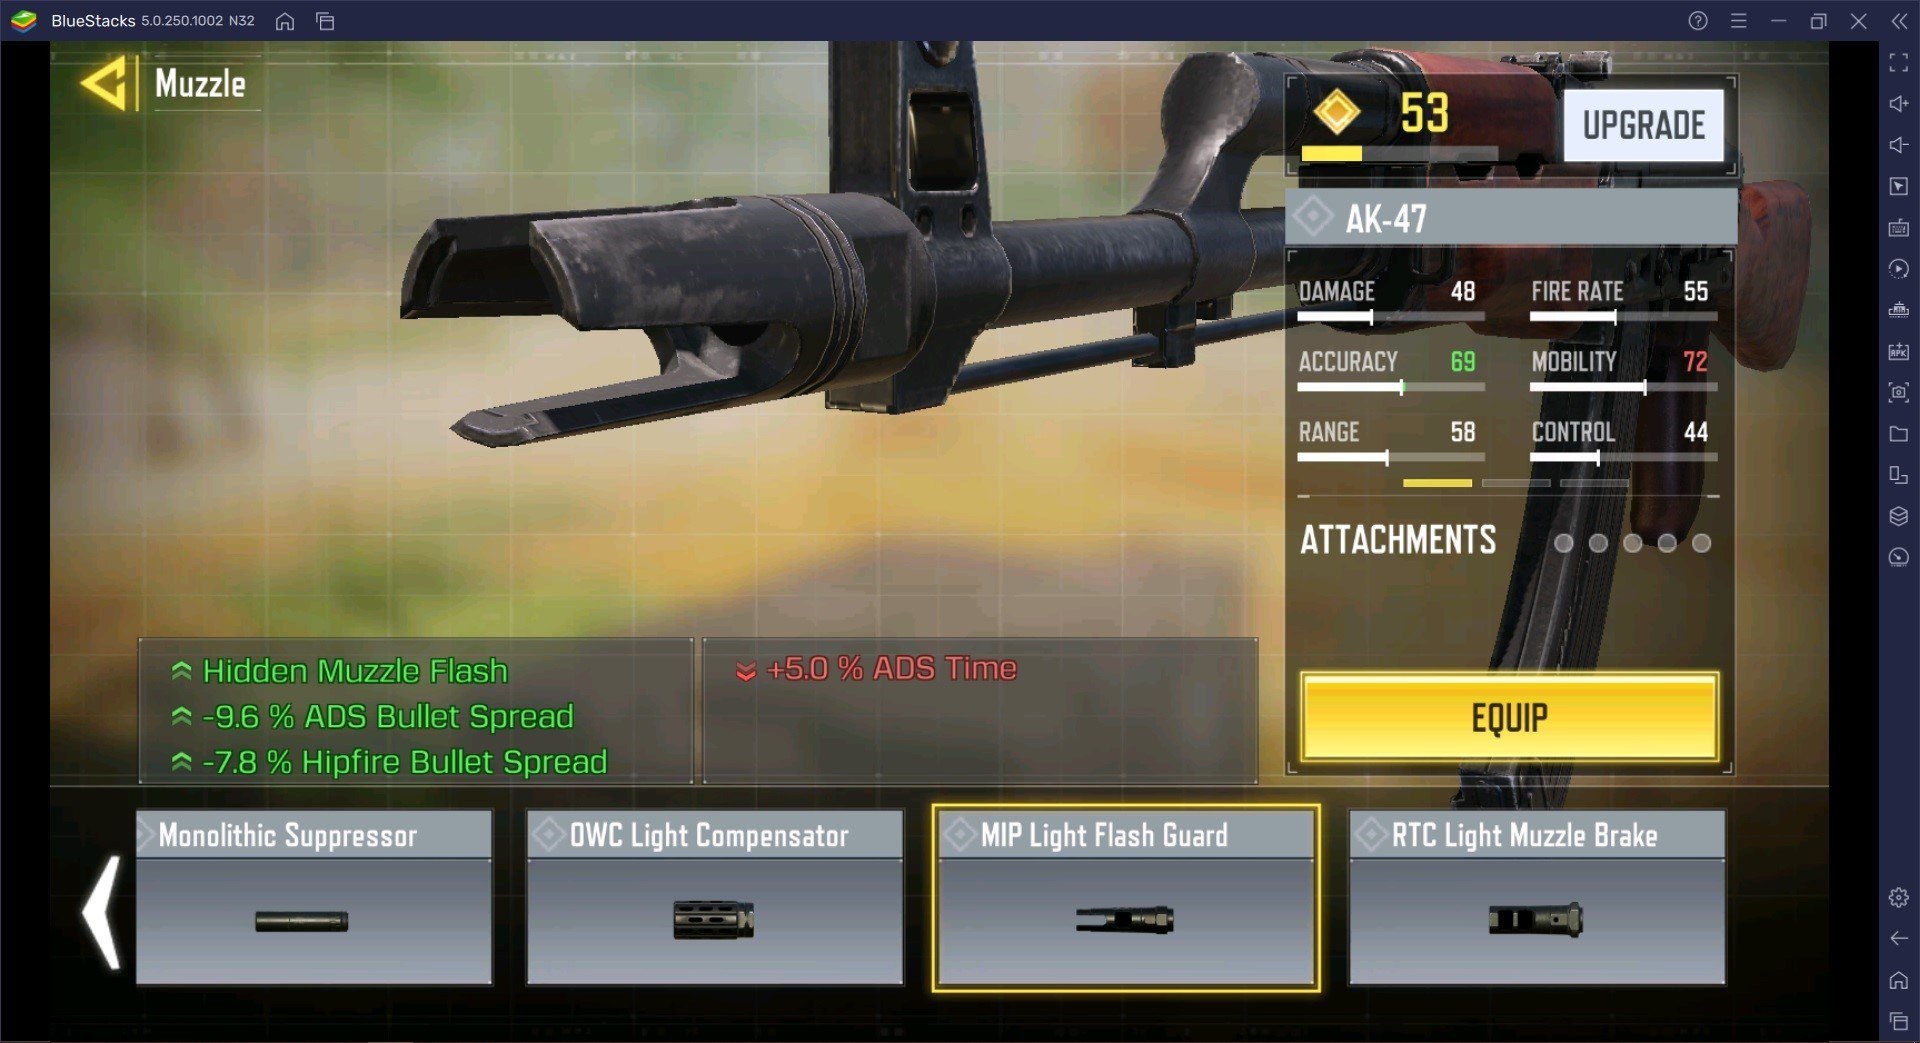 دليل الأسلحة في لعبة Call of Duty Mobile ، يذهب AK-47 إلى صانع السلاح